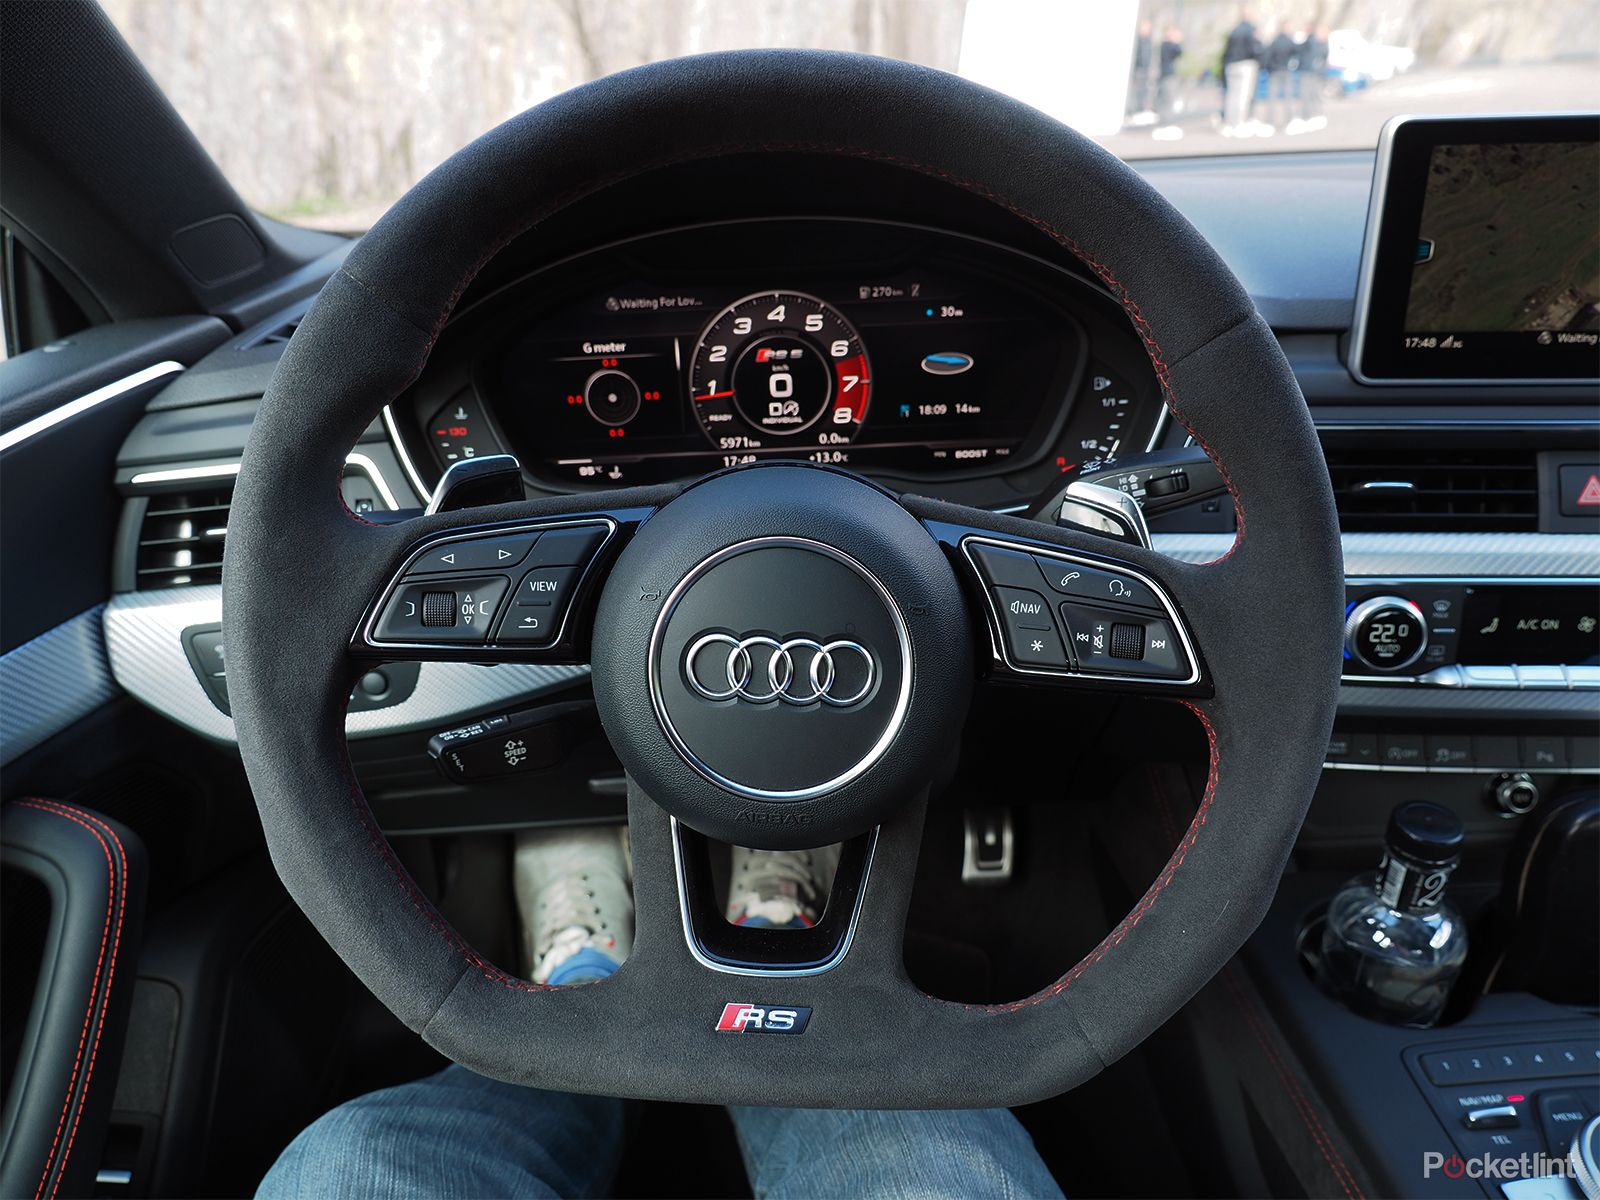 Audi RS5 interior image 2